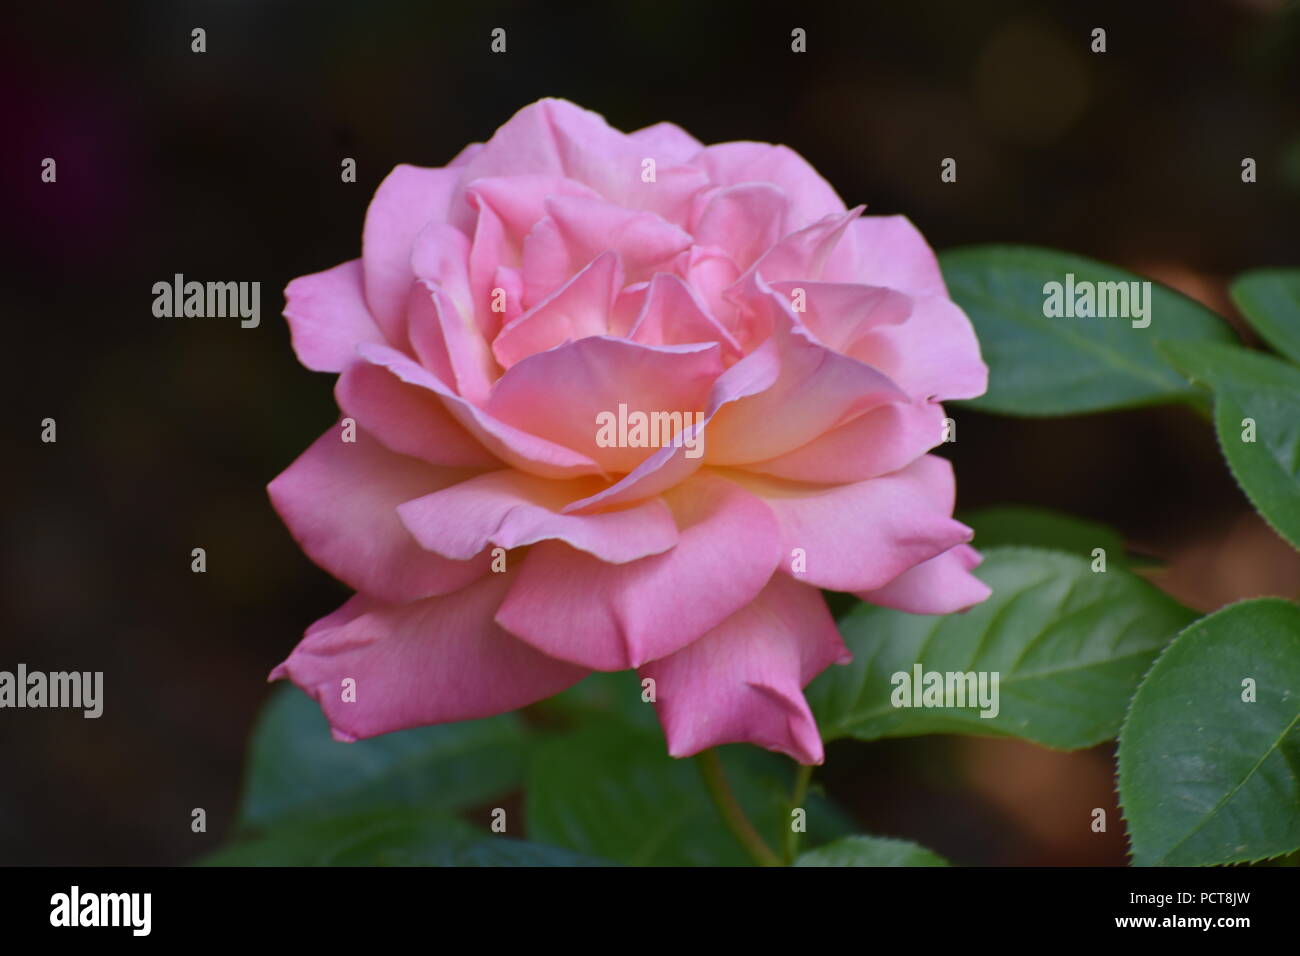 Solo gran rosa con pétalos de rosa y hojas de color verde oscuro en un fondo oscuro Foto de stock